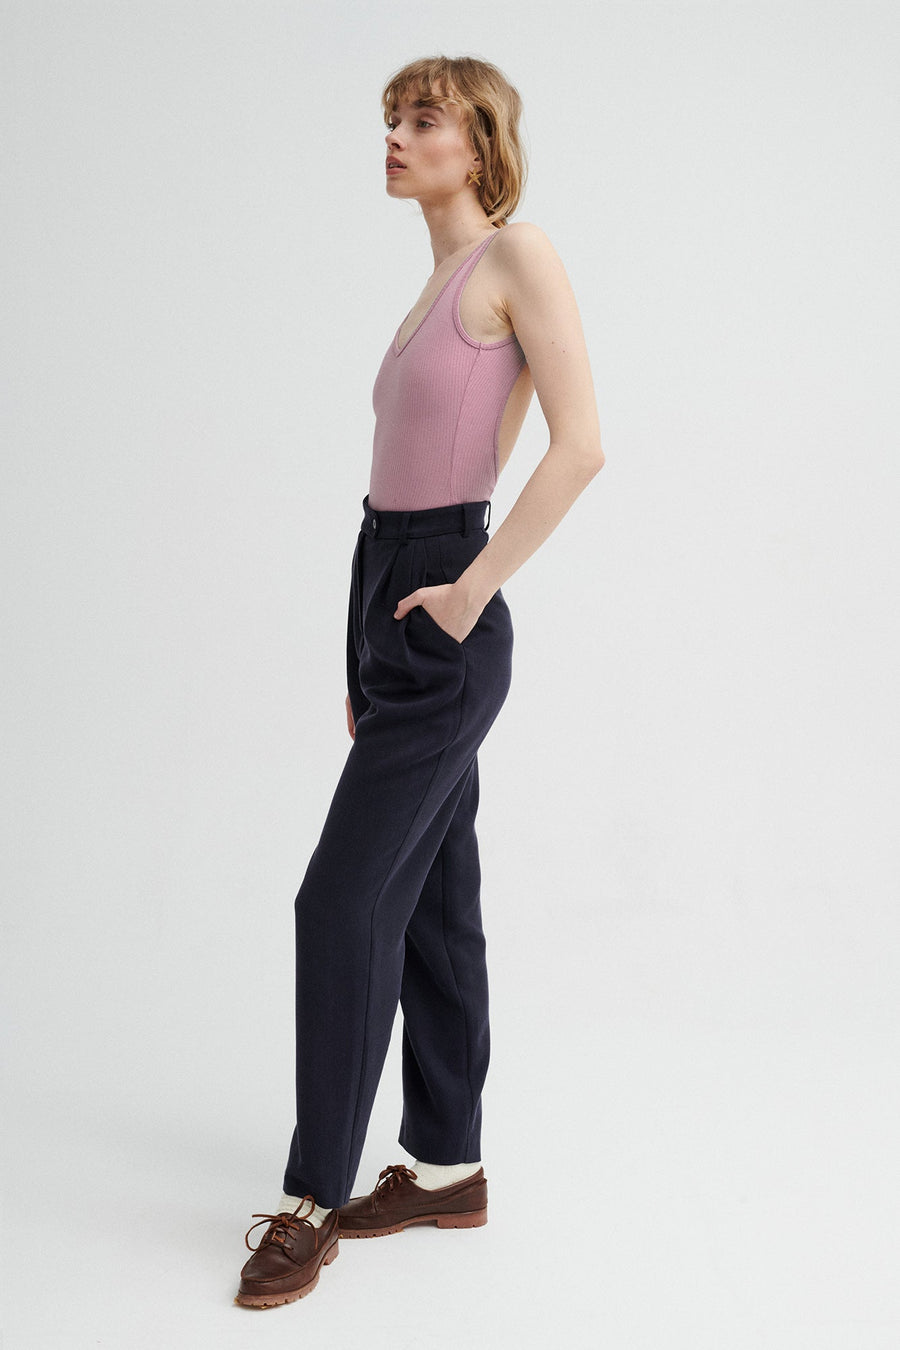 Body z bawełny organicznej / 01 / 36 / dusty pink *spodnie-z-tencelu-05-17-night-blue* ?Modelka ma 179cm wzrostu i prezentuje rozmiar S? 